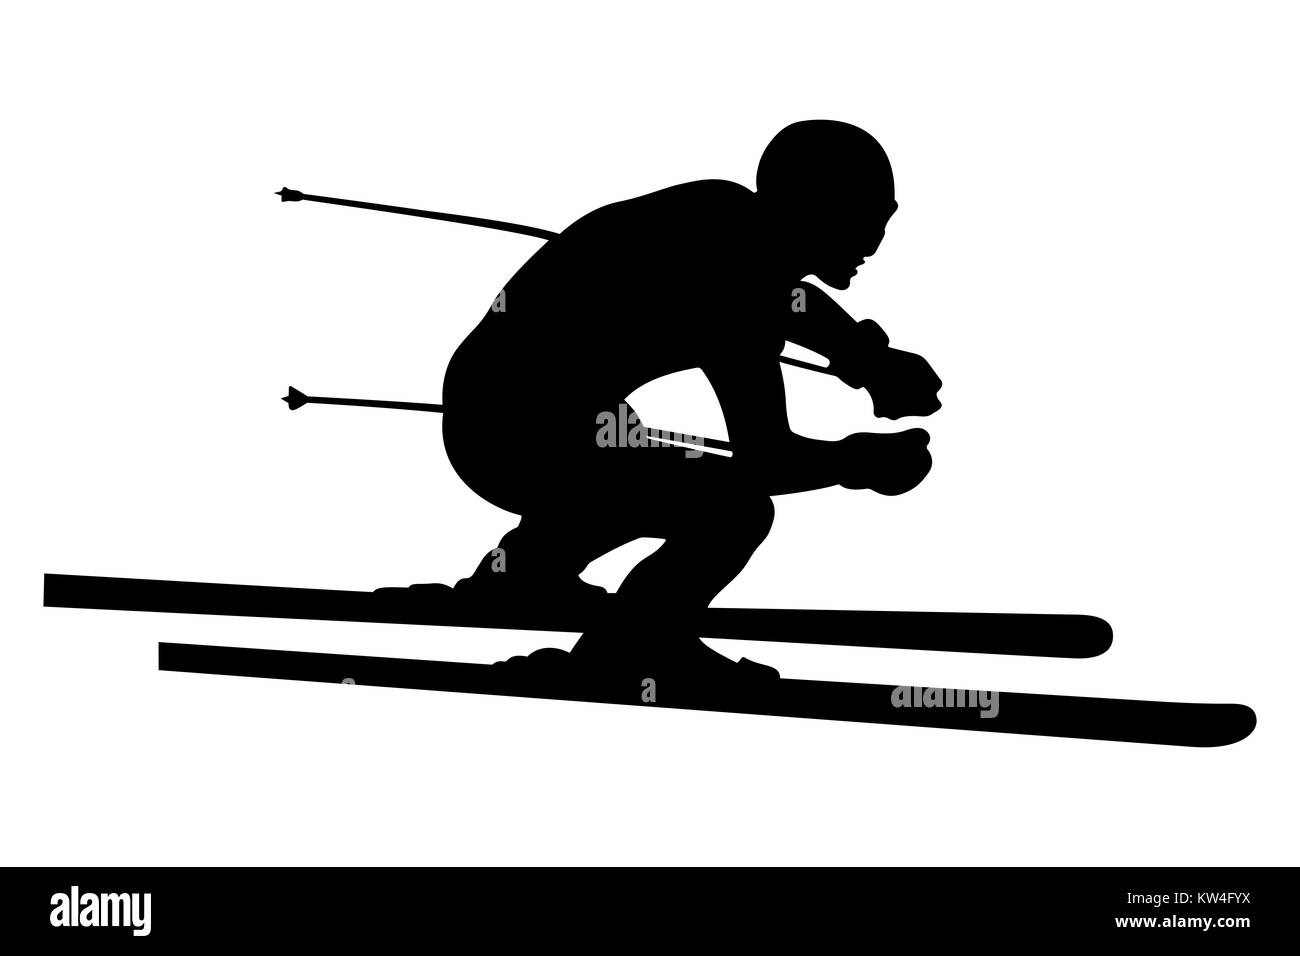 L'athlète de ski alpin ski alpin vector illustration Banque D'Images